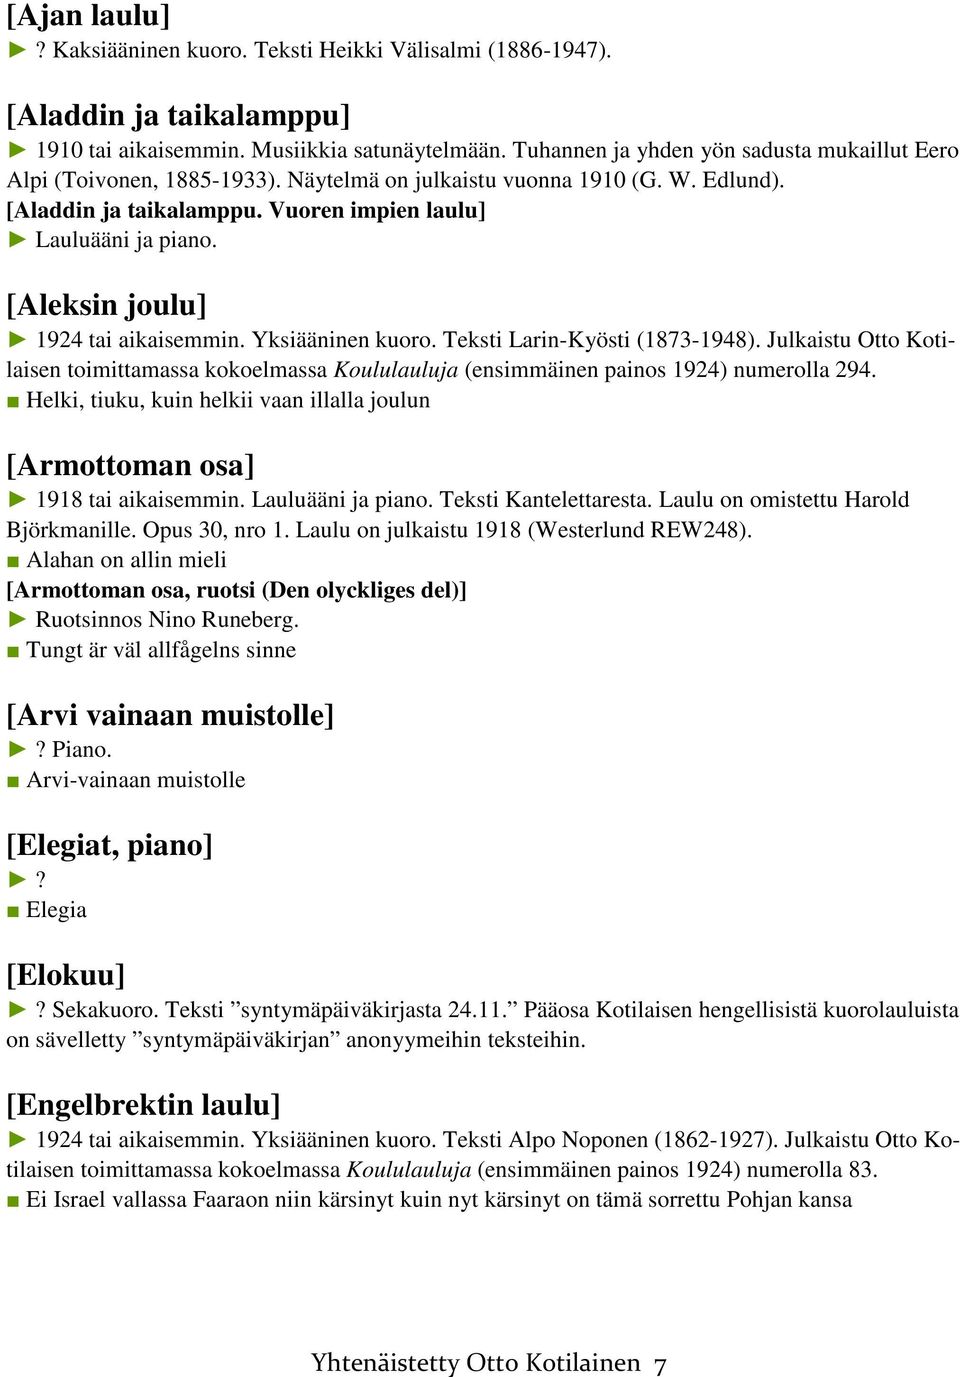 [Aleksin joulu] 1924 tai aikaisemmin. Yksiääninen kuoro. Teksti Larin-Kyösti (1873-1948). Julkaistu Otto Kotilaisen toimittamassa kokoelmassa Koululauluja (ensimmäinen painos 1924) numerolla 294.